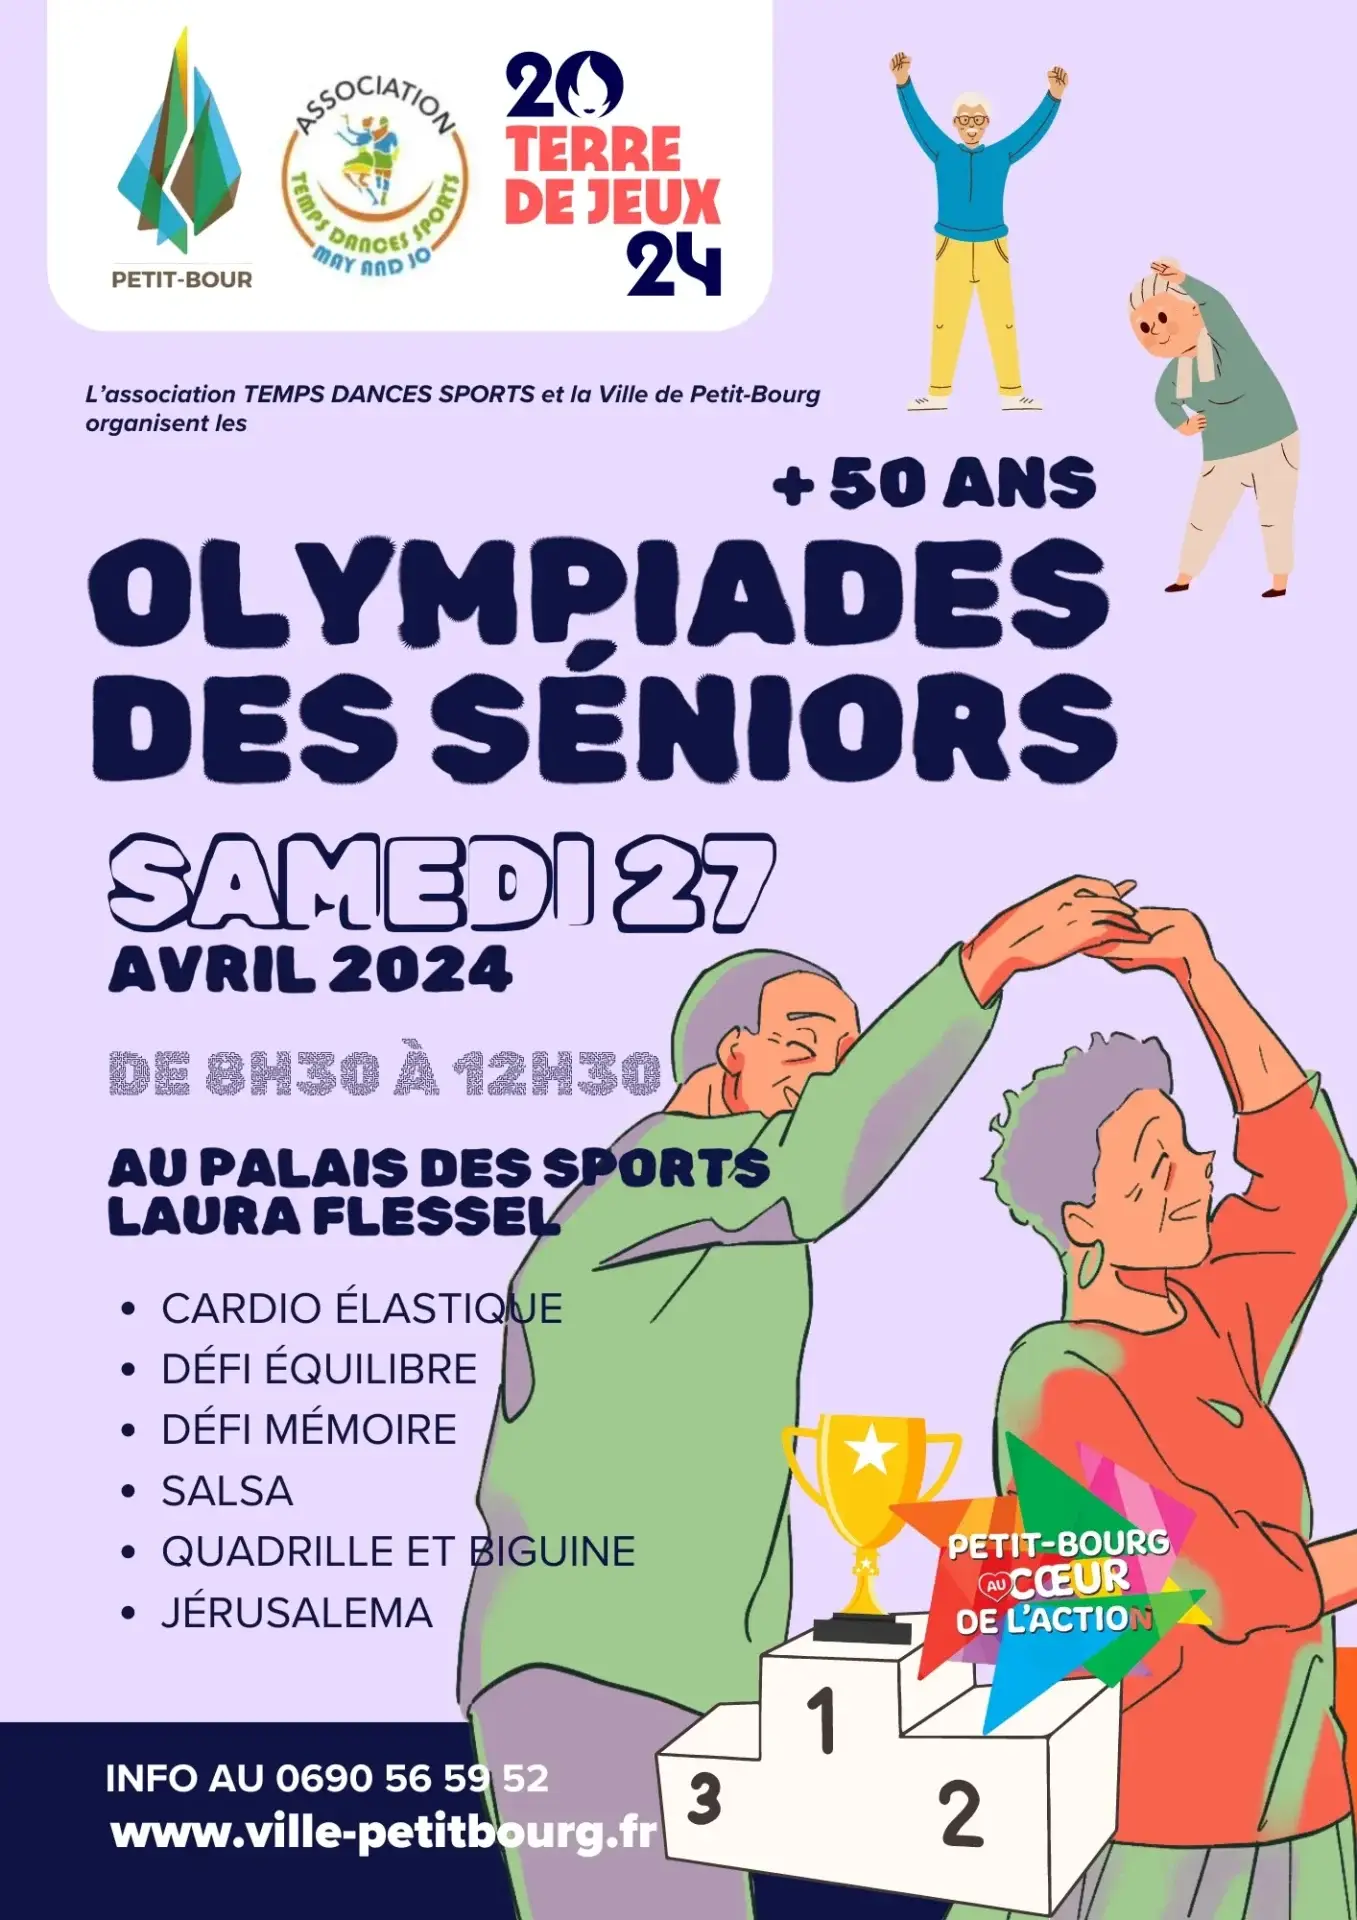 C’est parti pour les Olympiades des séniors avec la Ville de Petit-Bourg